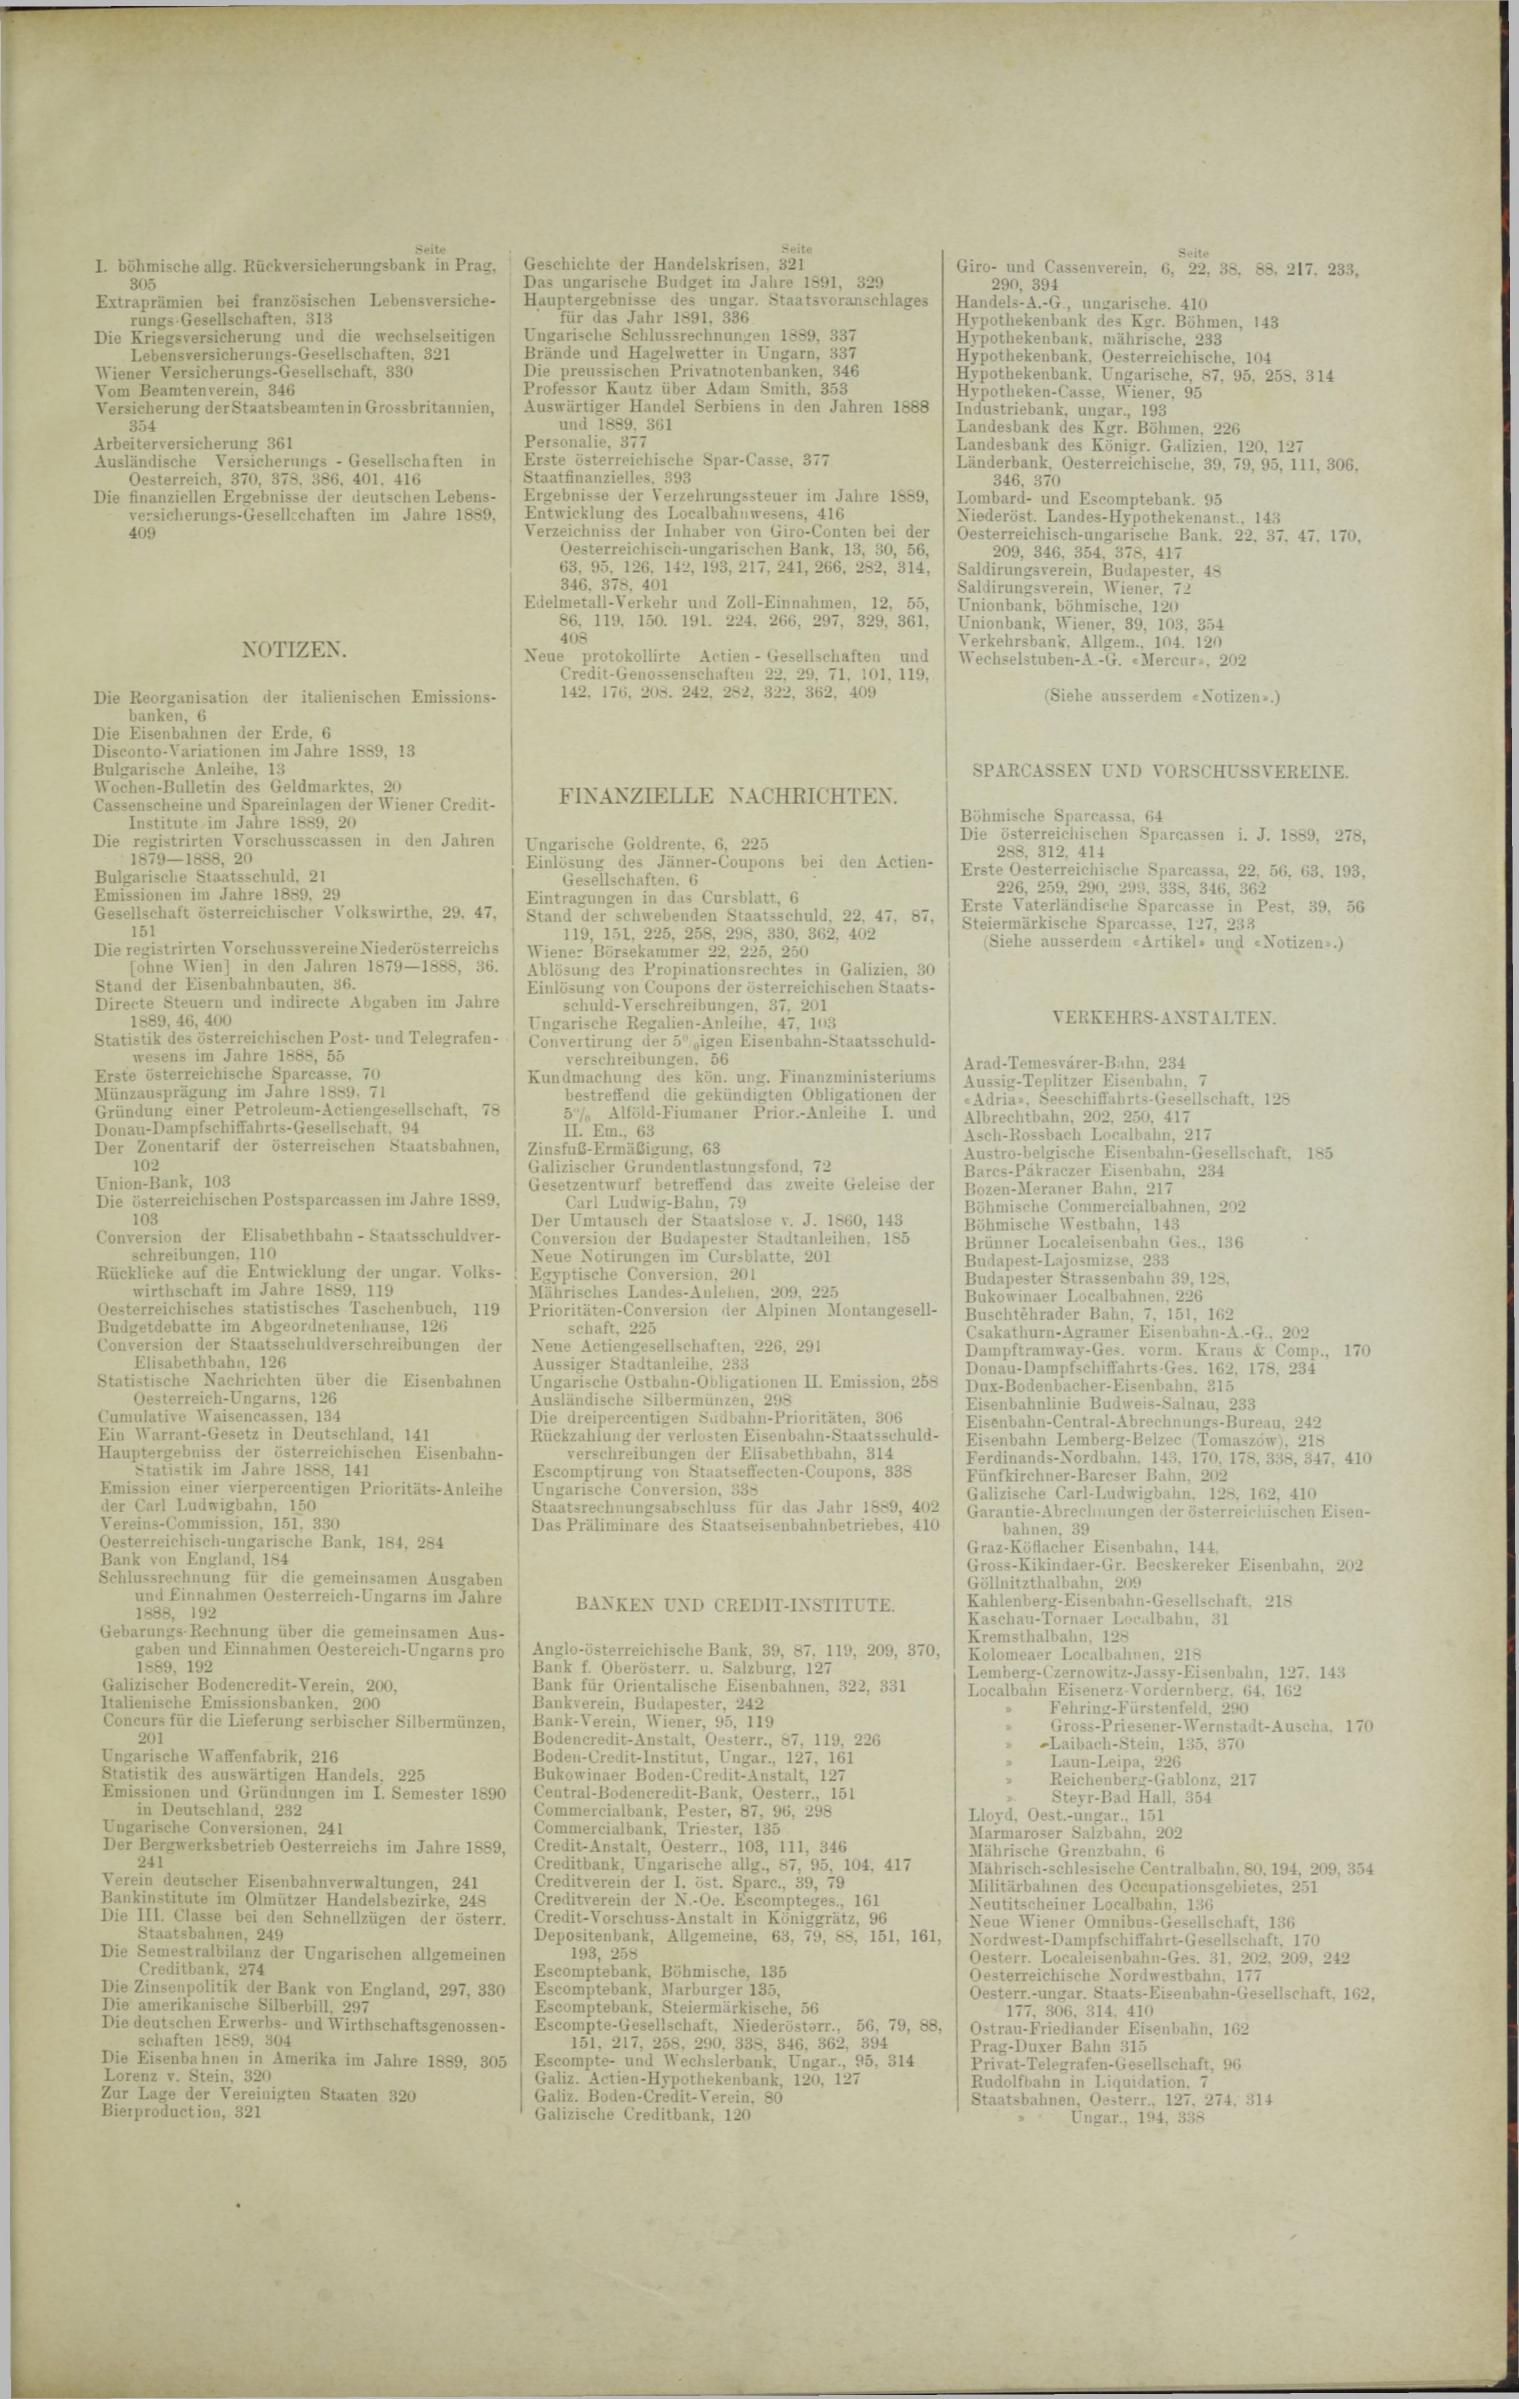 Der Tresor 01.05.1890 - Seite 11